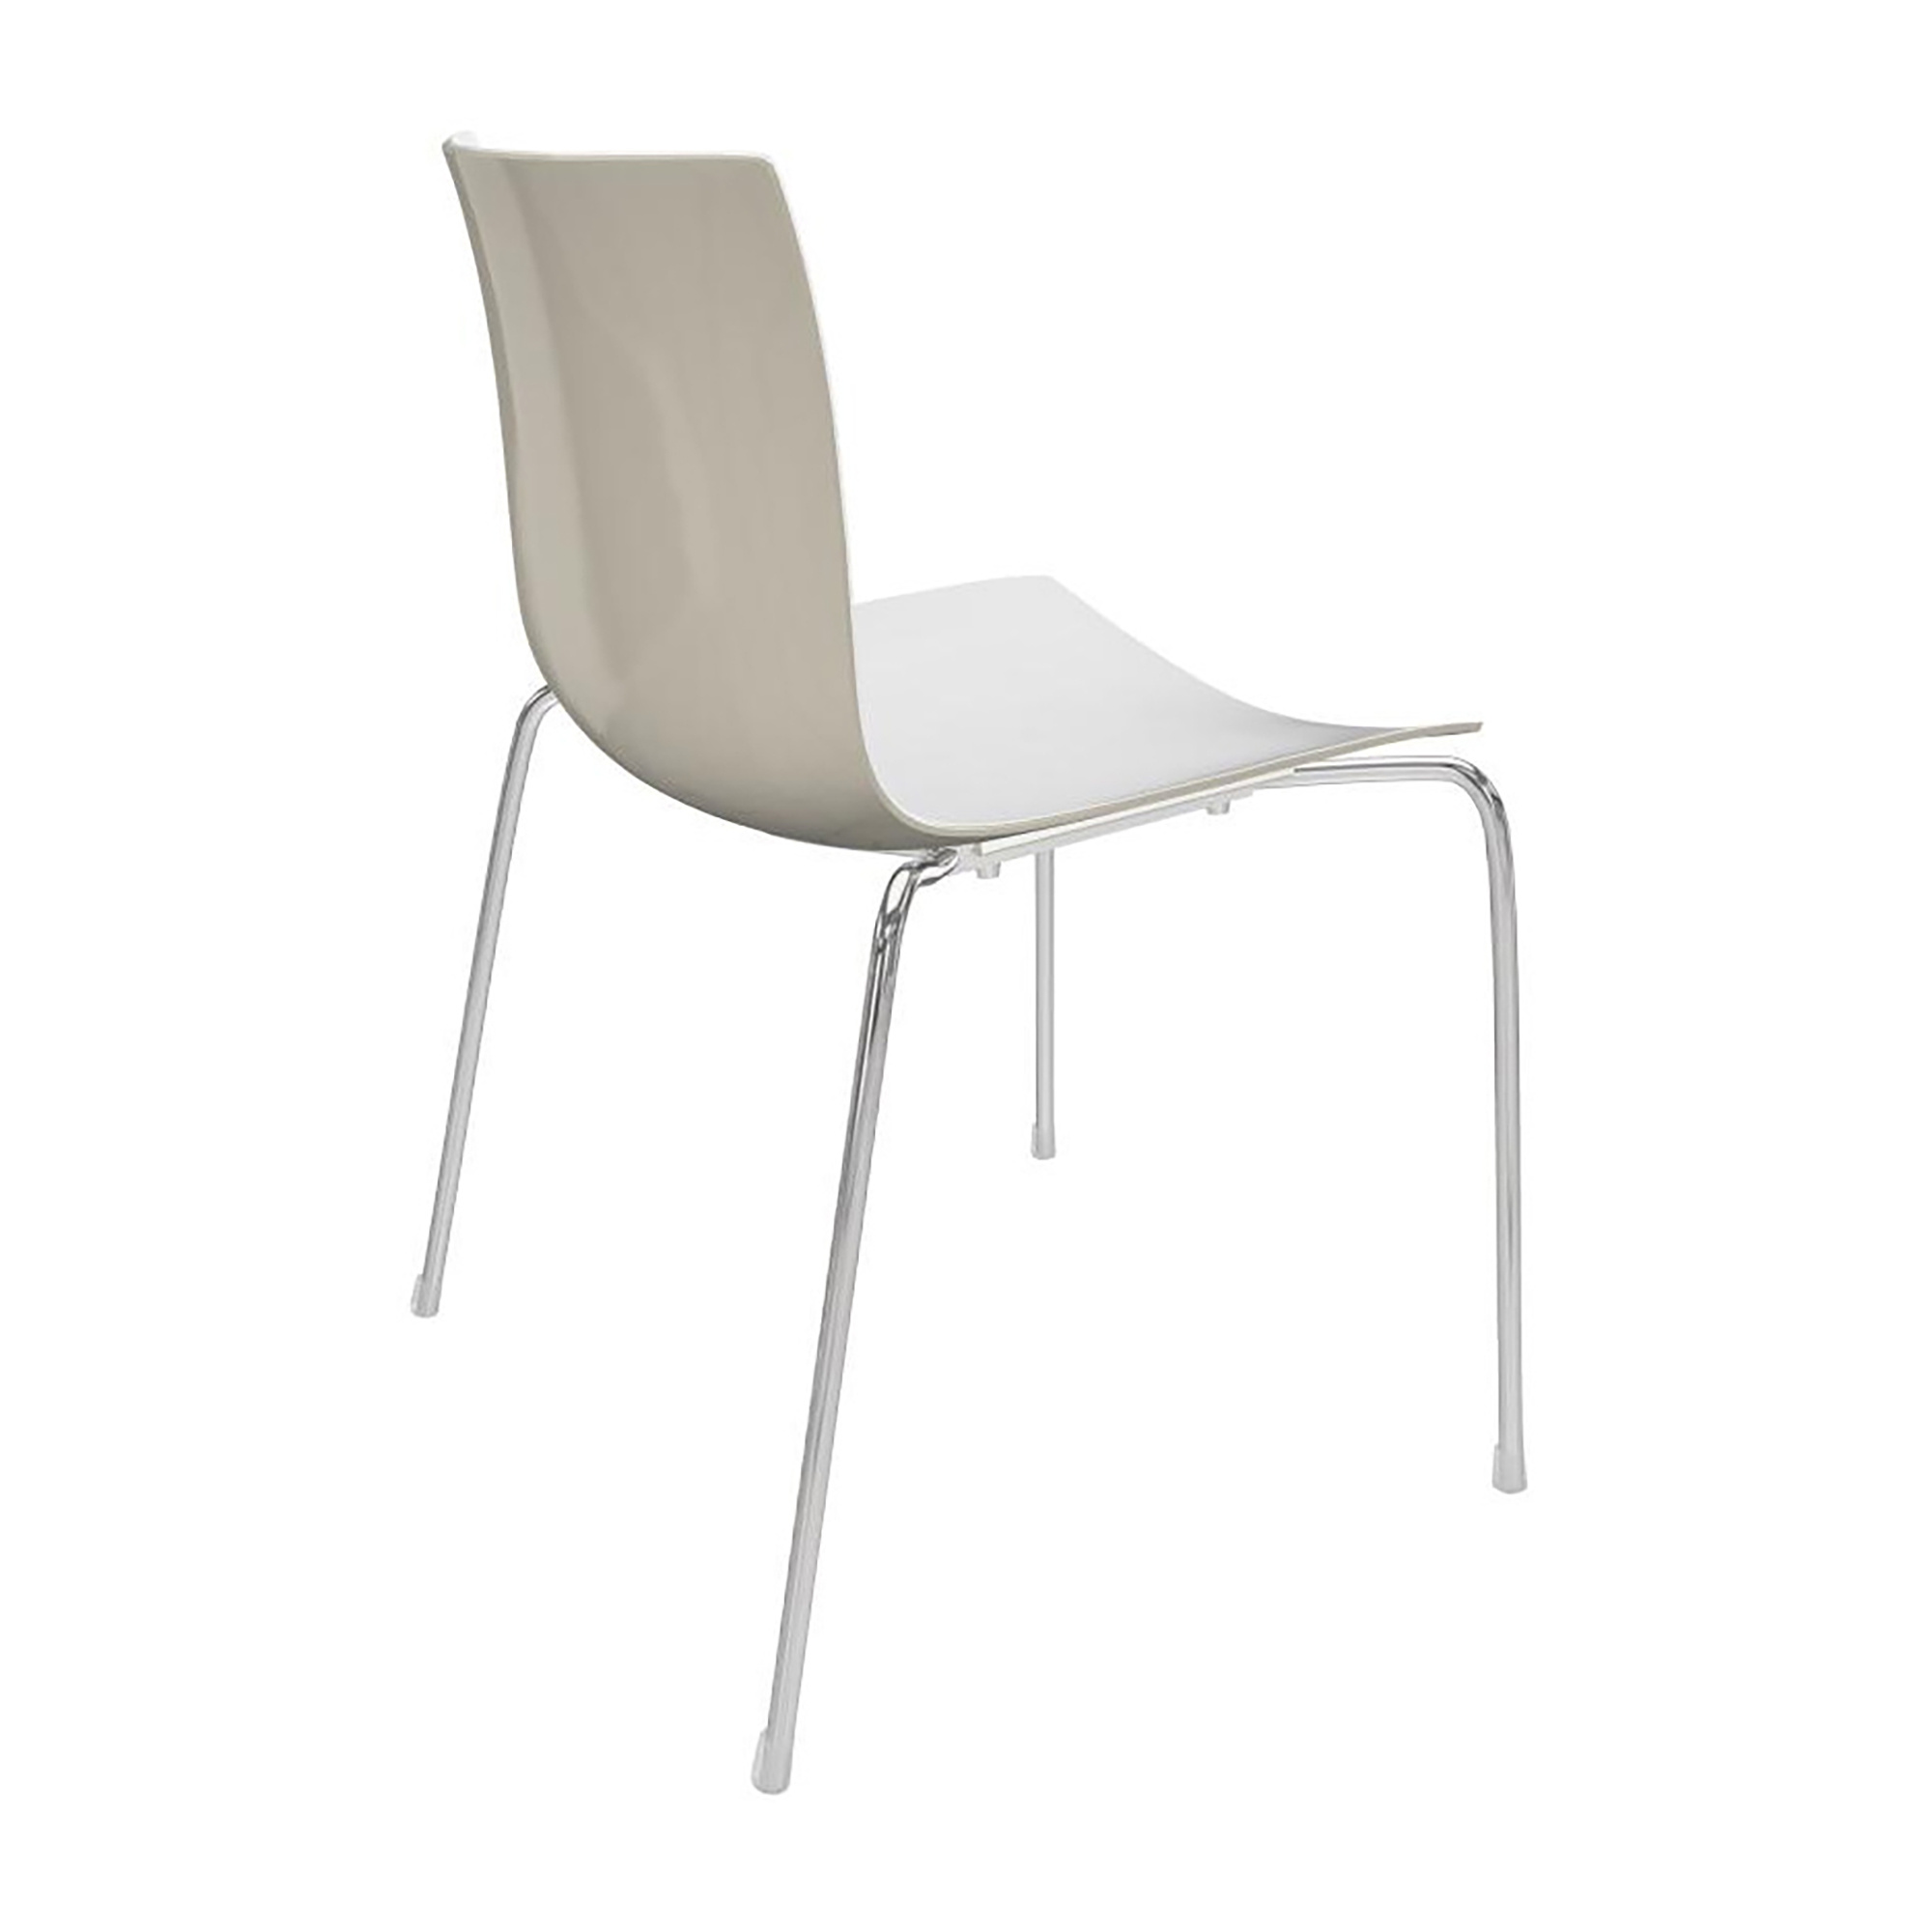 Arper - Catifa 46 0251 stoel tweekleurig onderstel chroom - wit/ivoor/buitenschaal glanzend/binnen mat/BxDxH 53,5x50,5x80cm/onderstel staal verchroomd